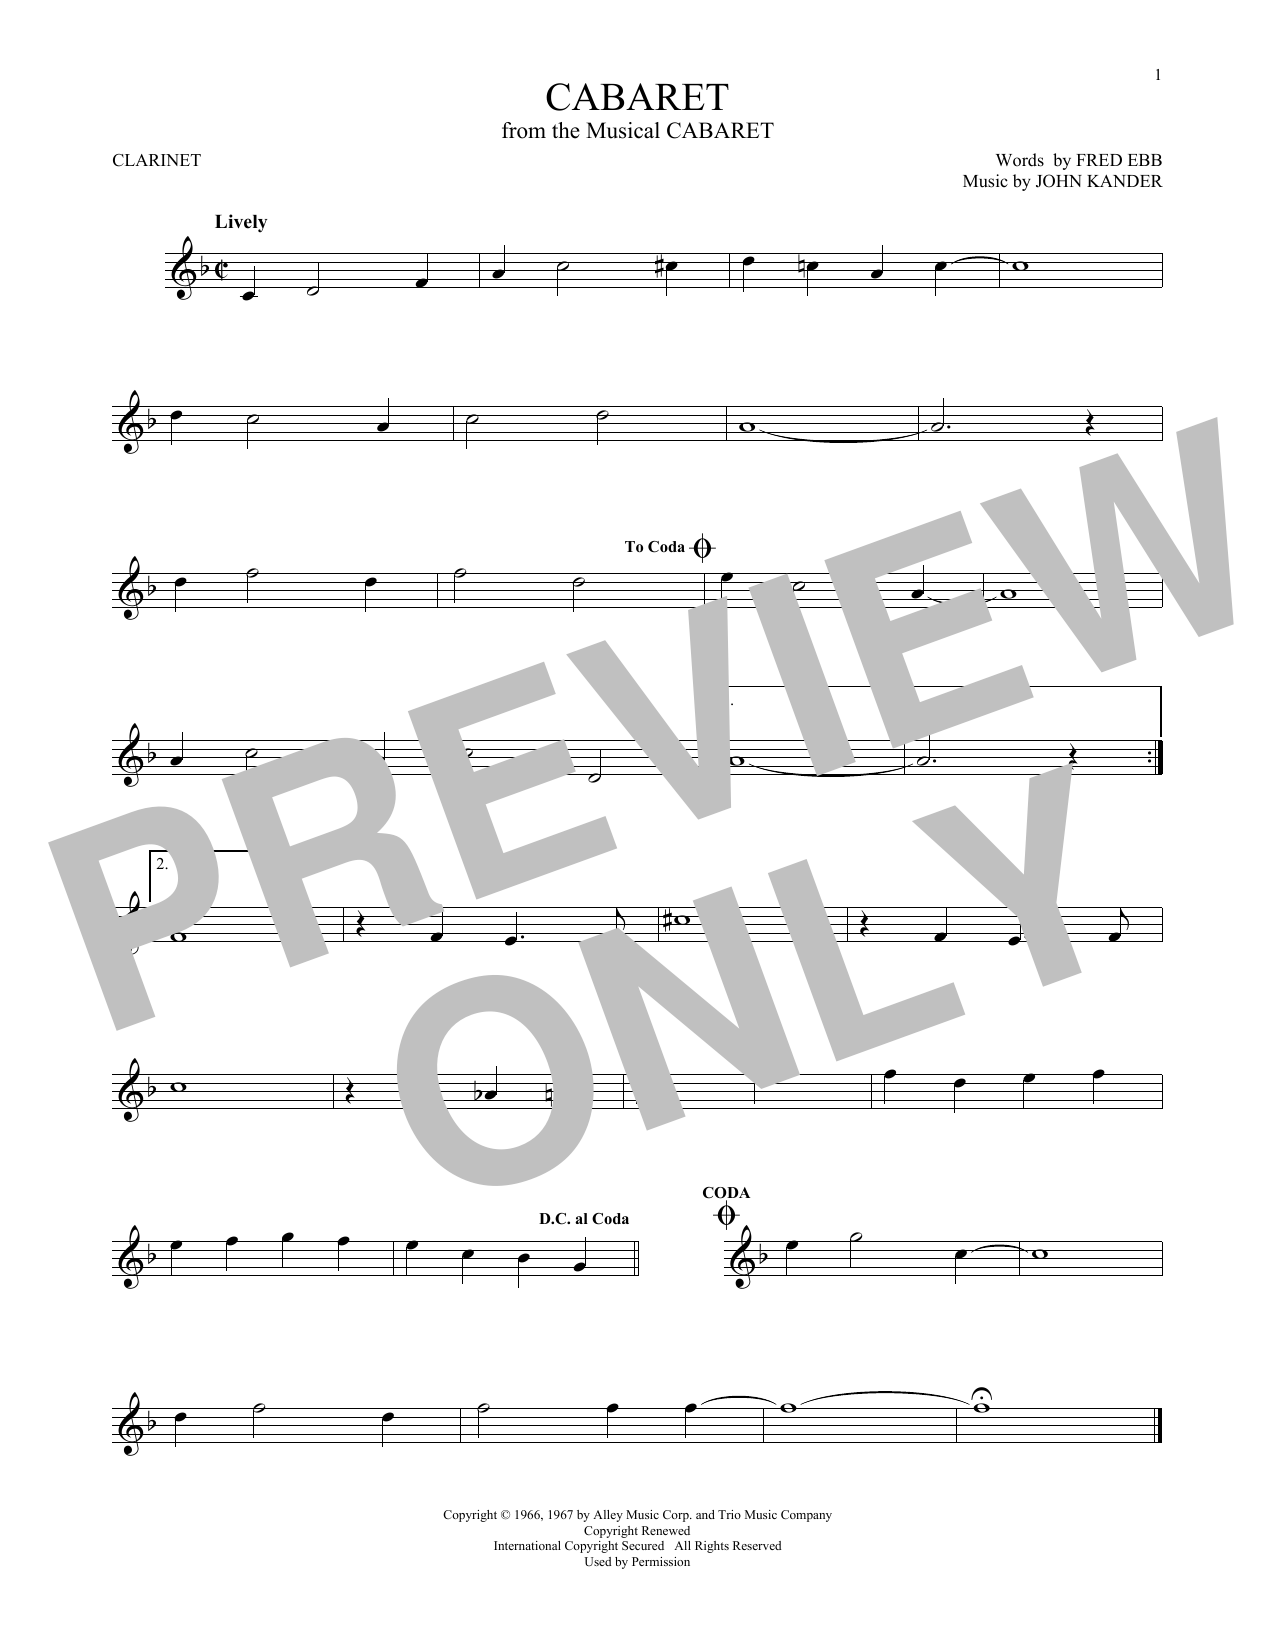 John Kander & Fred Ebb Cabaret Sheet Music Notes & Chords for Flute - Download or Print PDF